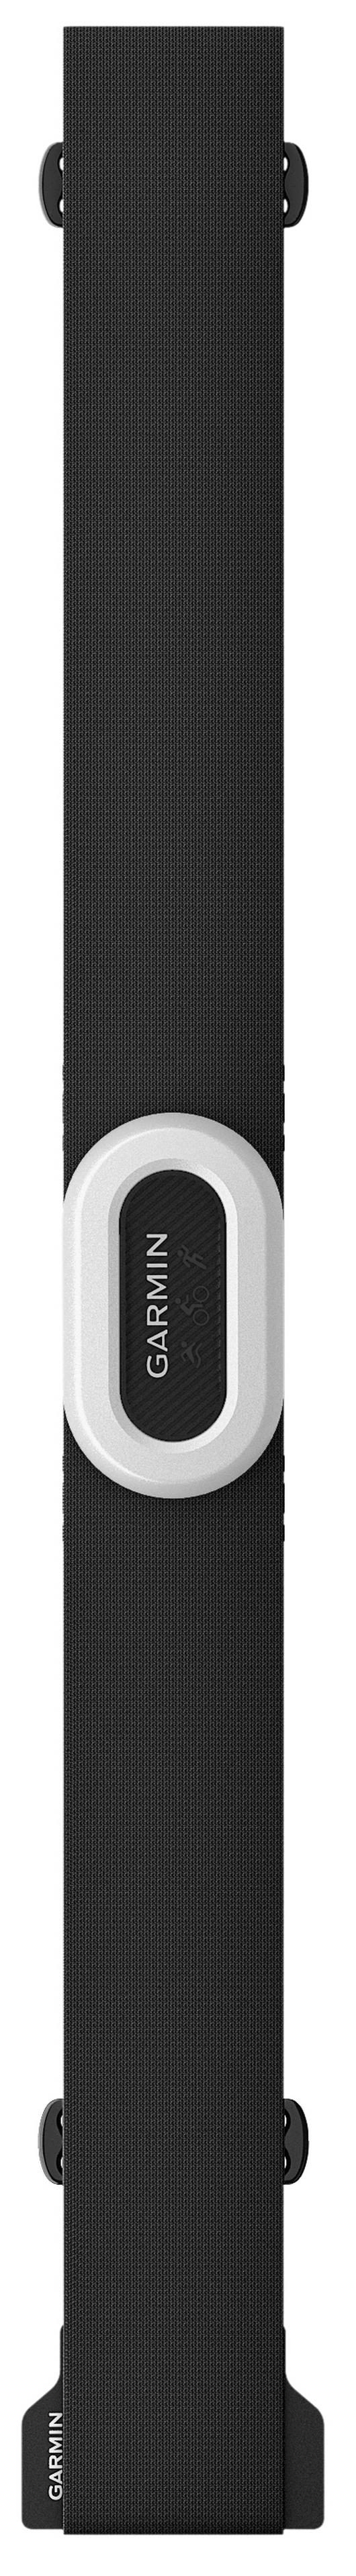 Garmin HRM-Pro Plus (Black/White)